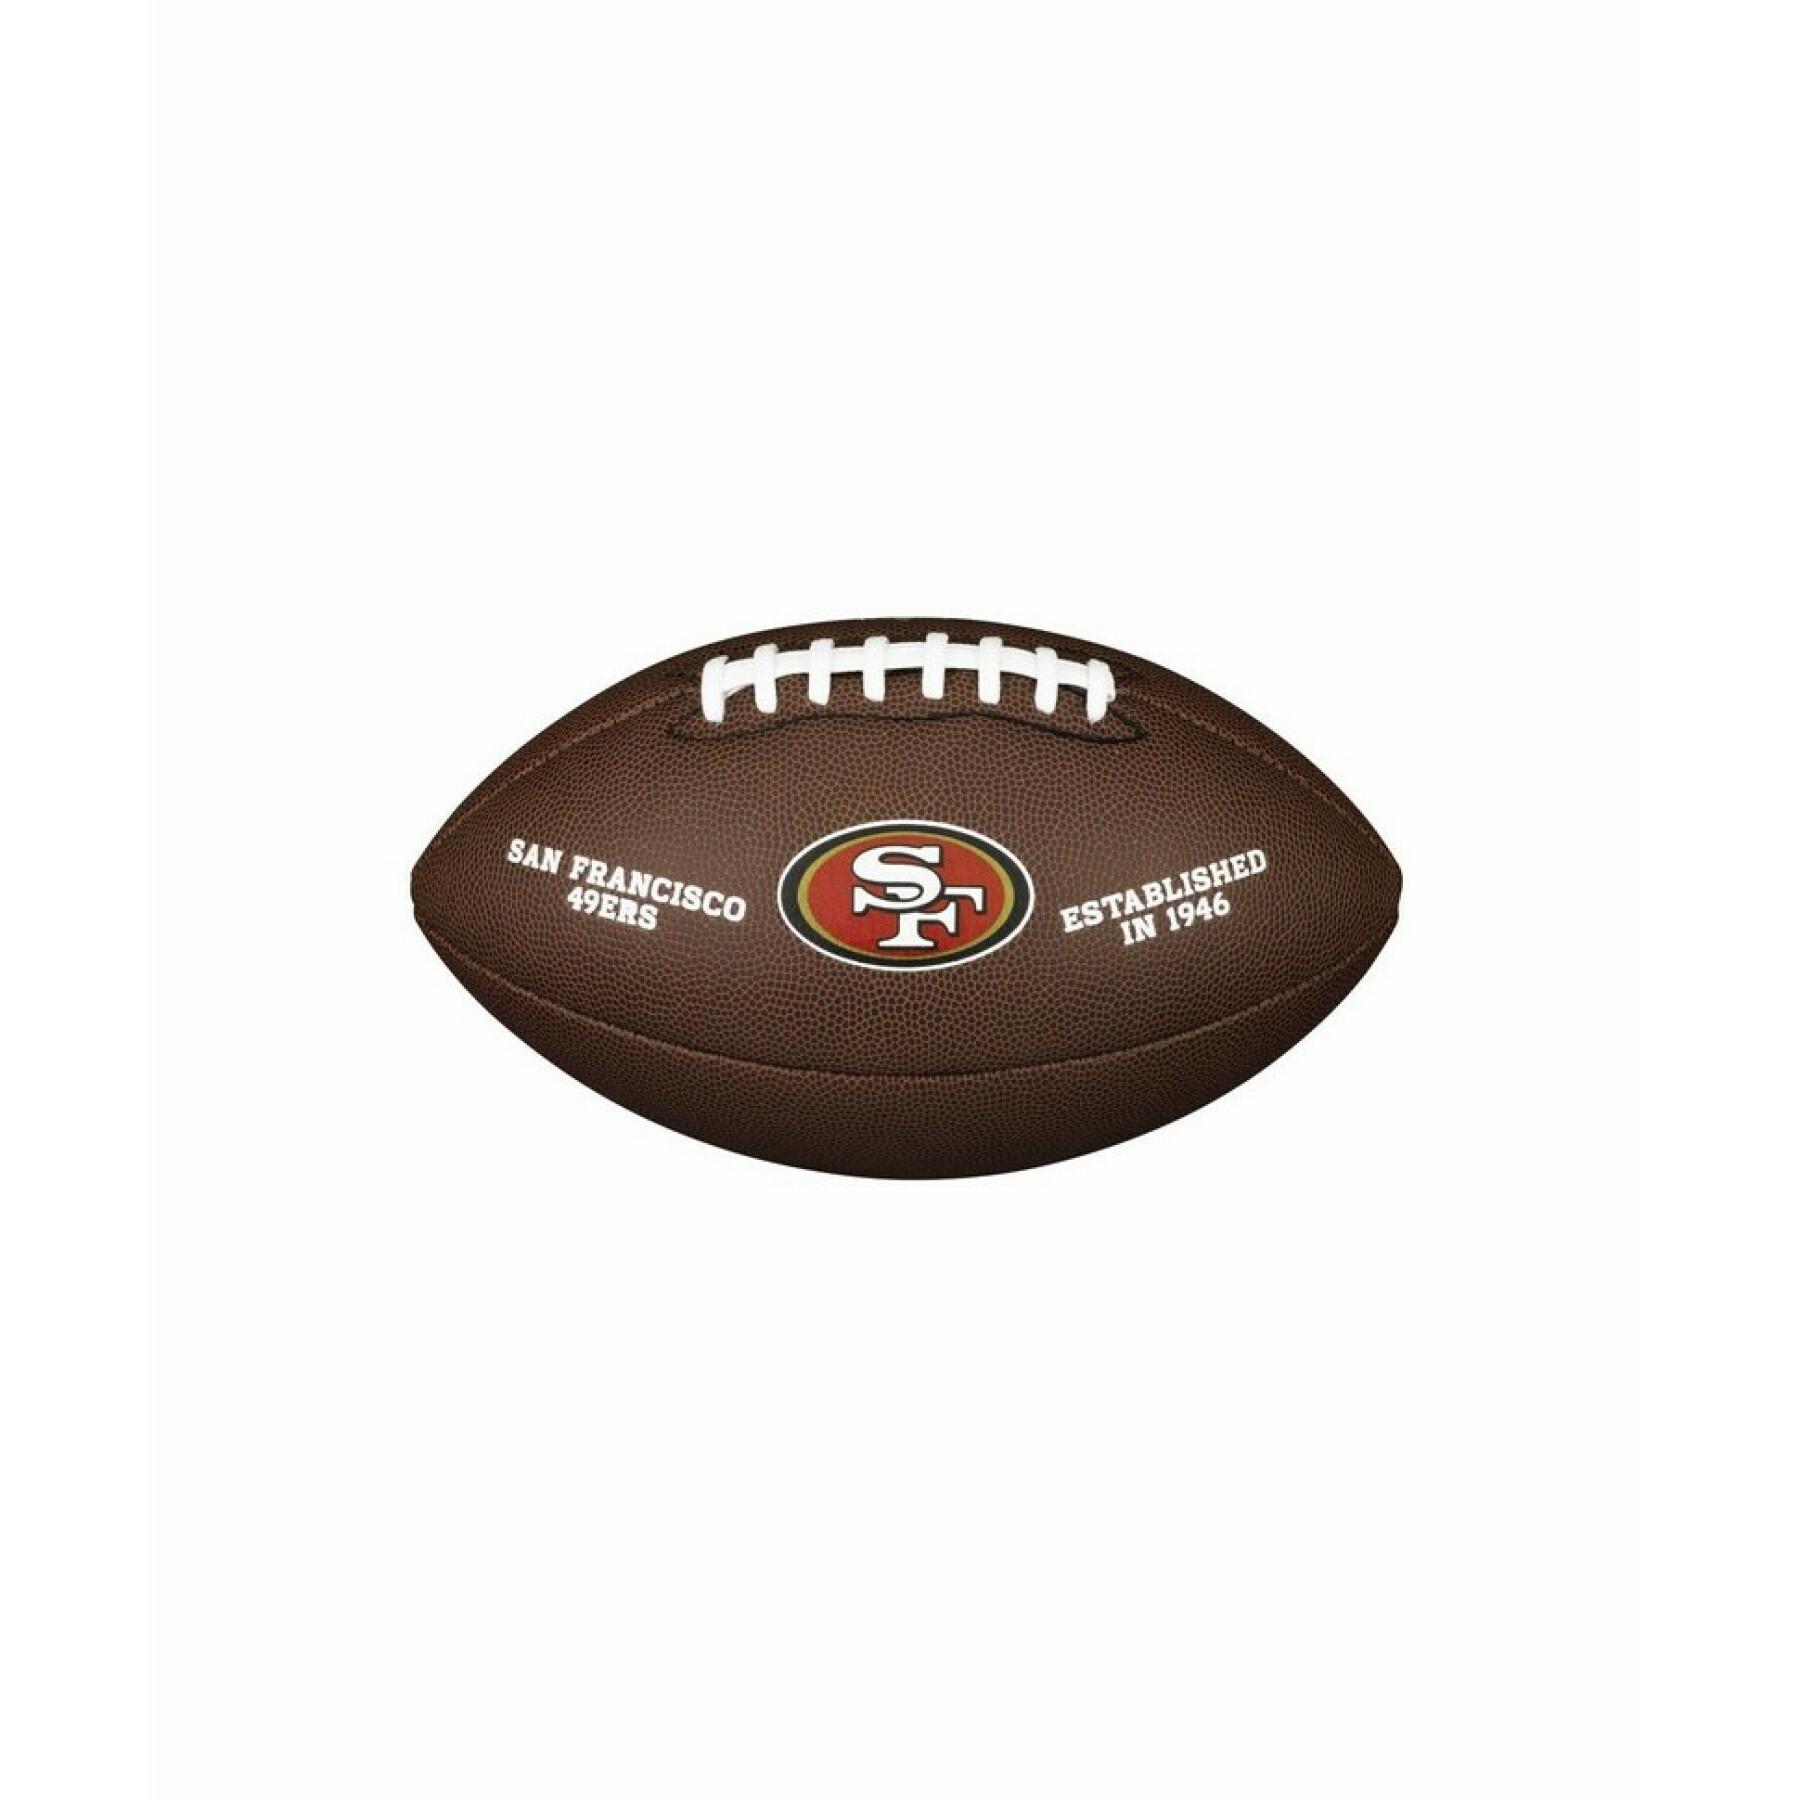 Balon Wilson 49ers NFL Licensed